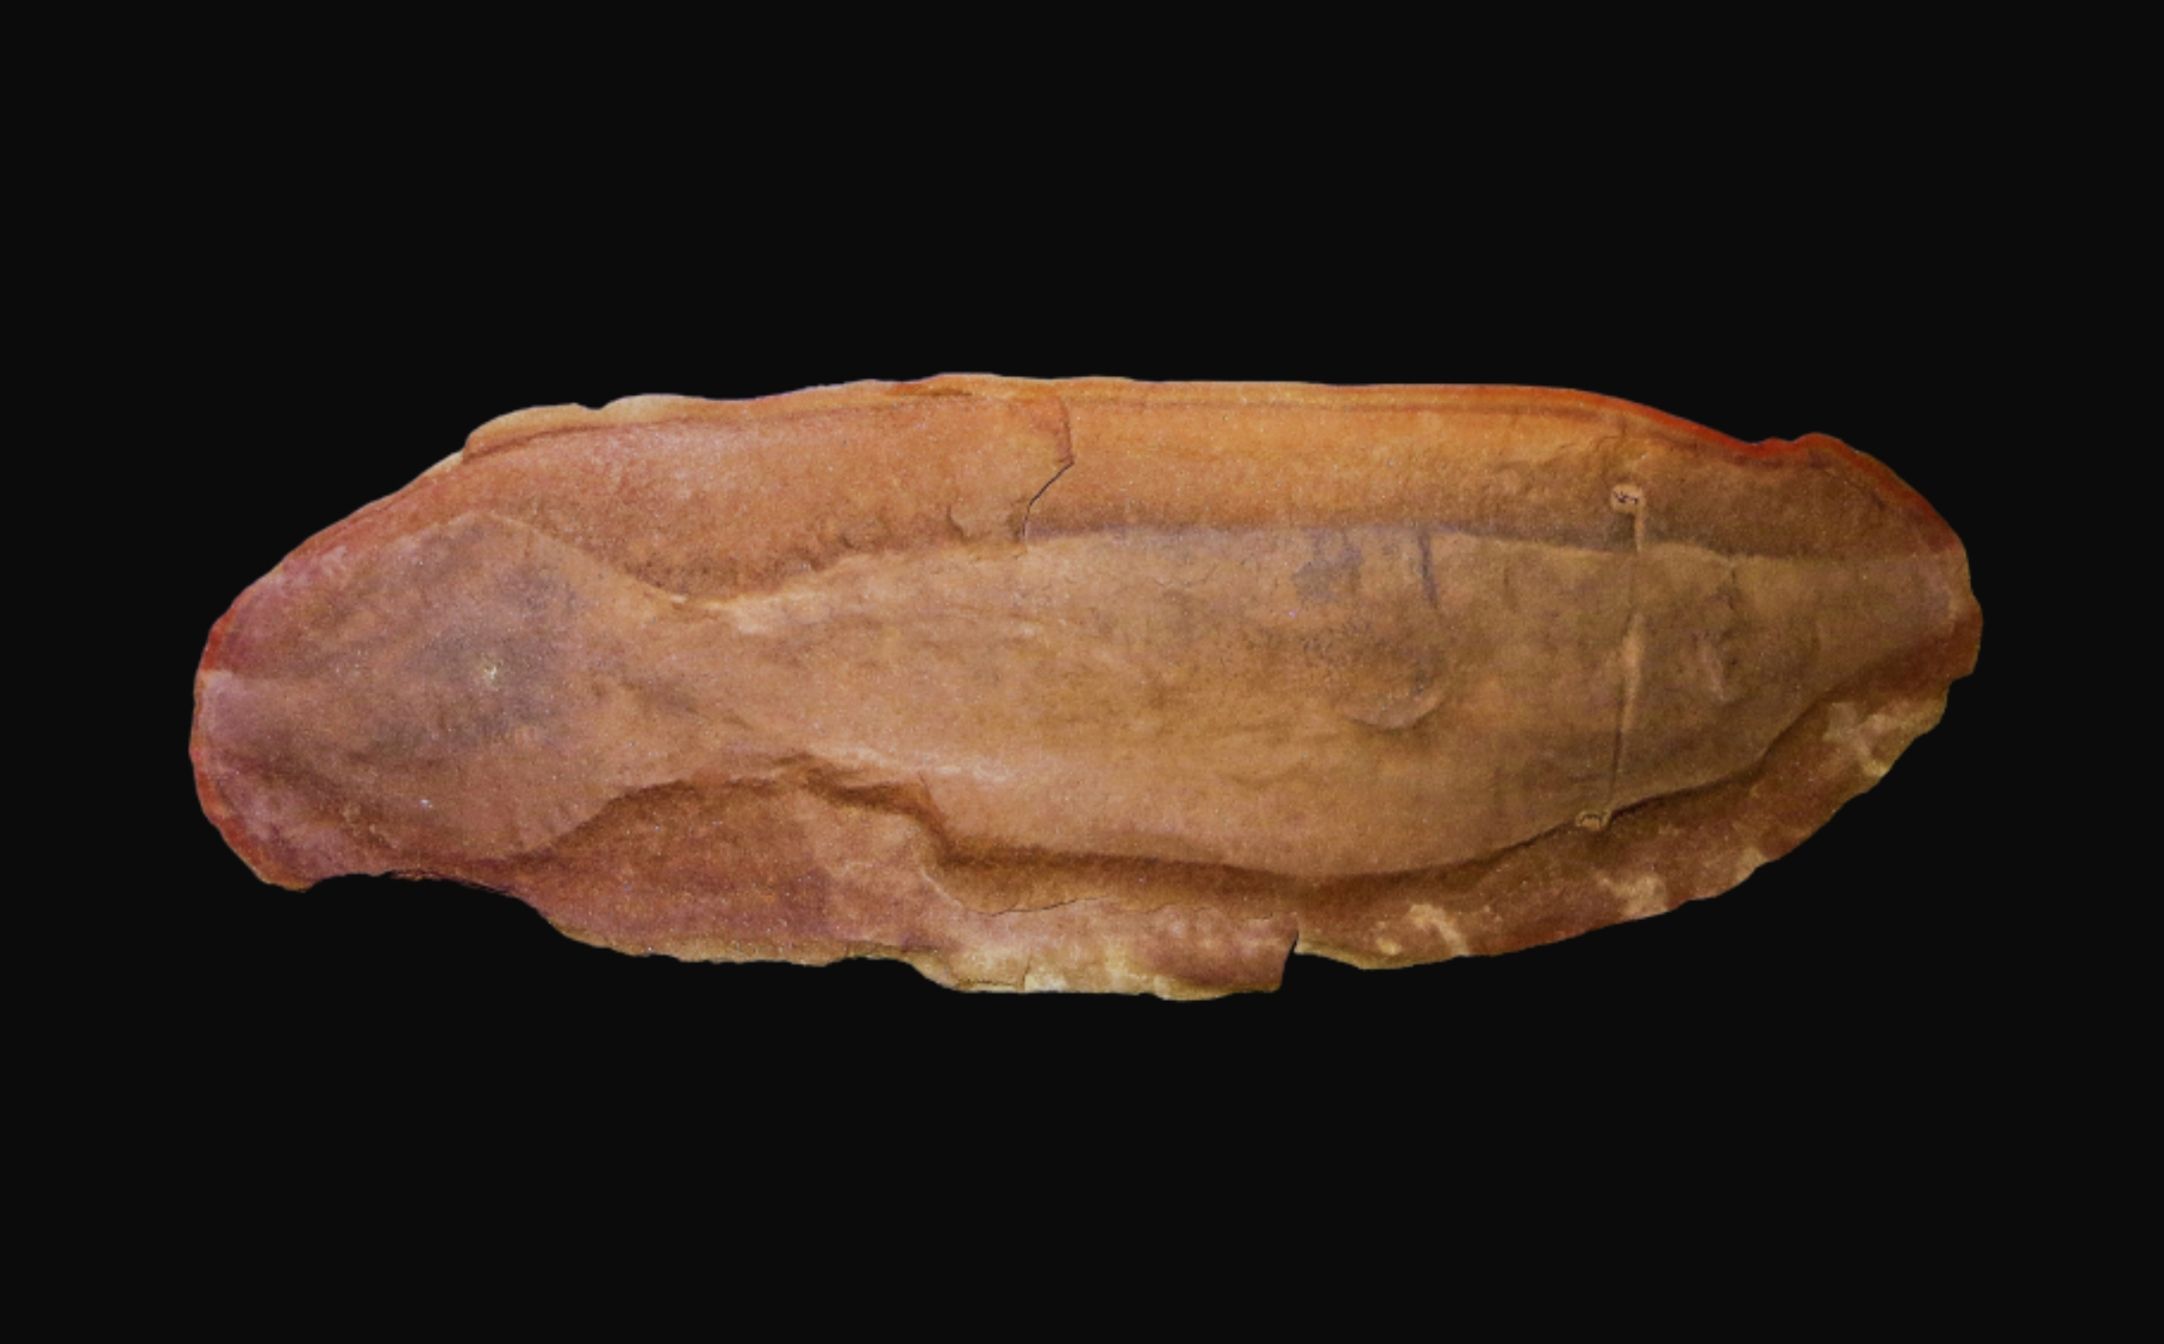 Tully Monster - အပြာရောင်မှ လျှို့ဝှက်ဆန်းကြယ်သော သမိုင်းမတင်မီ သတ္တဝါ ၆